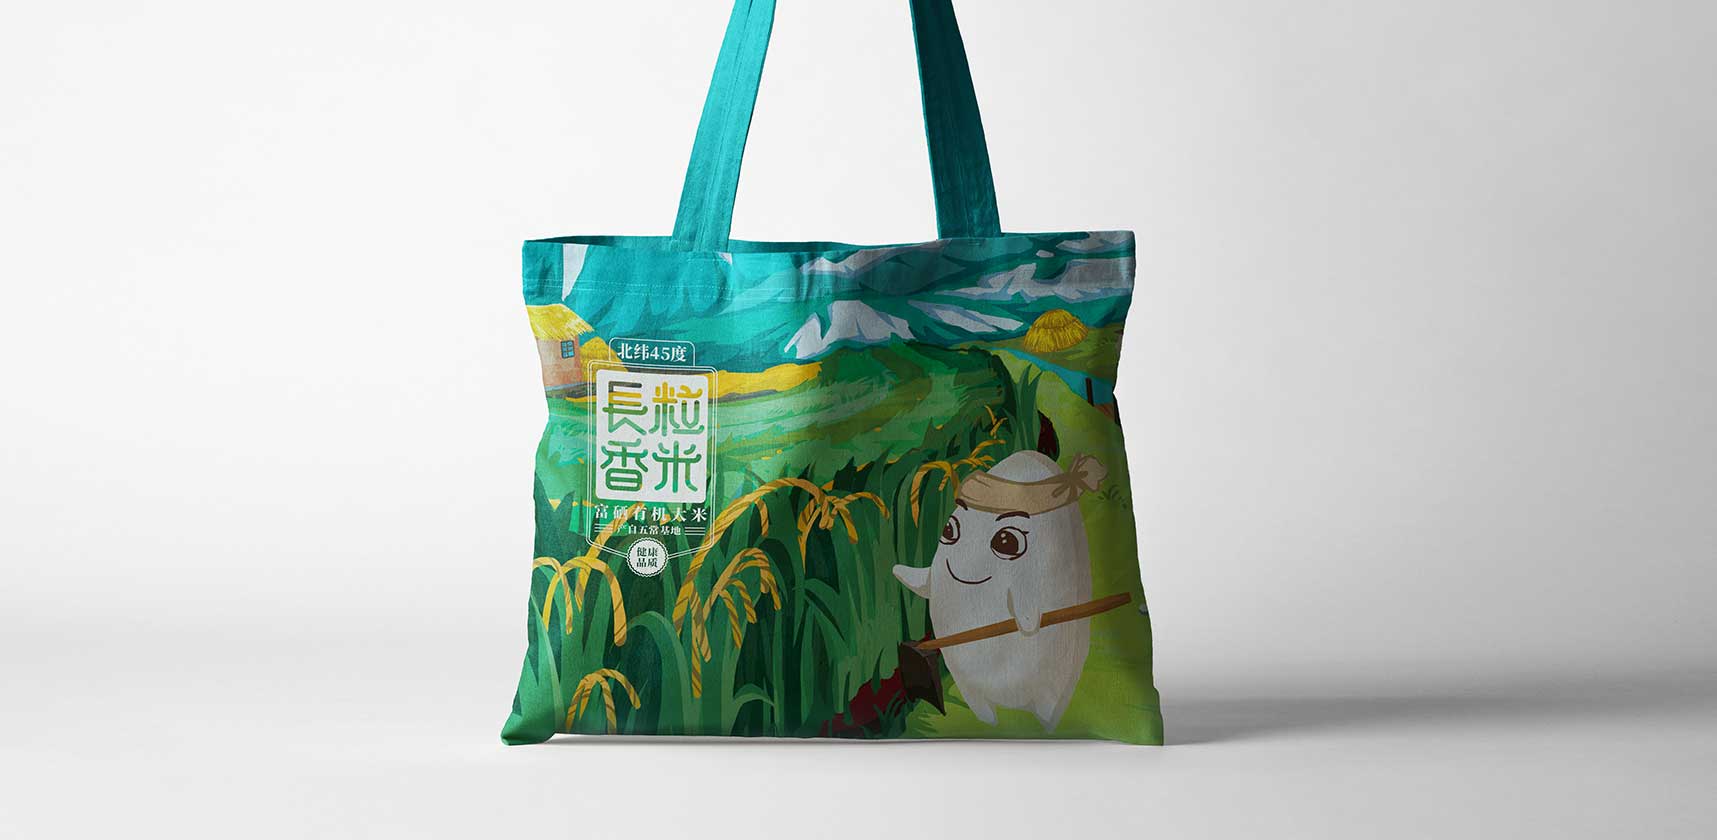 金谷尚品大米产品包装手提袋设计